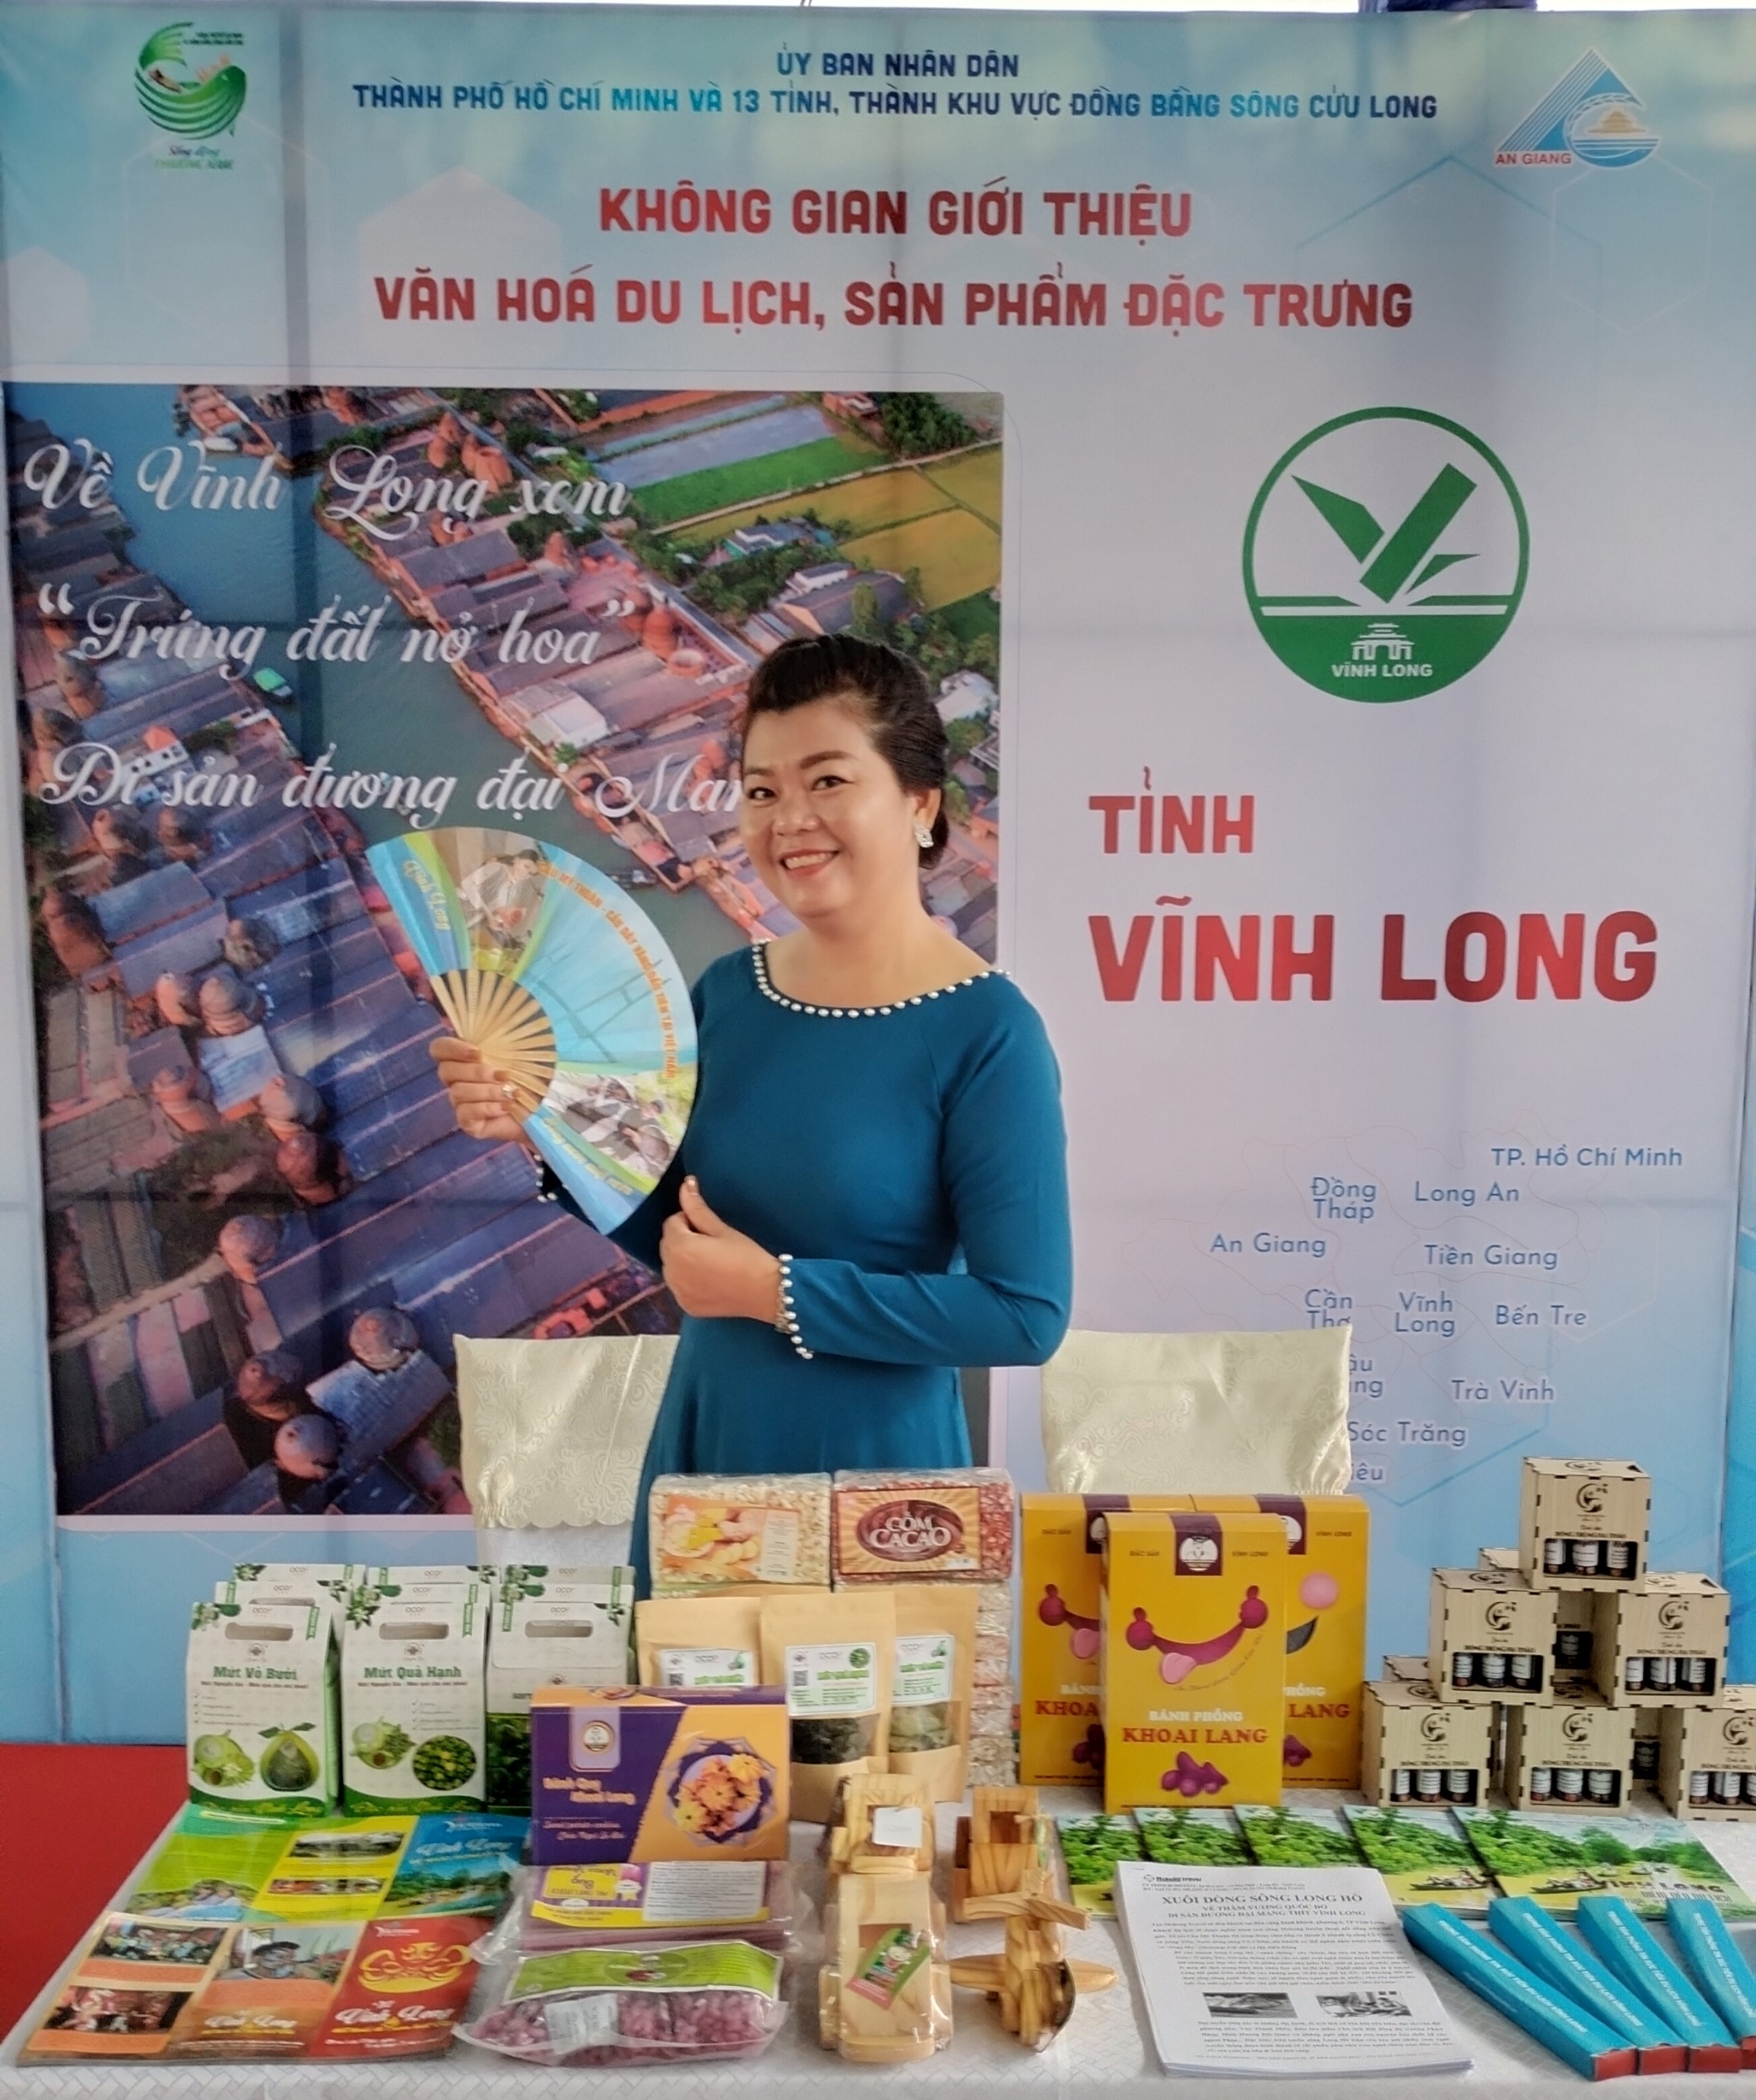 Vĩnh Long tham gia Hội nghị tổng kết chương trình liên kết hợp tác phát triển du lịch giữa Thành phố Hồ Chí Minh và 13 tỉnh, thành phố Đồng bằng Sông Cửu Long năm 2022